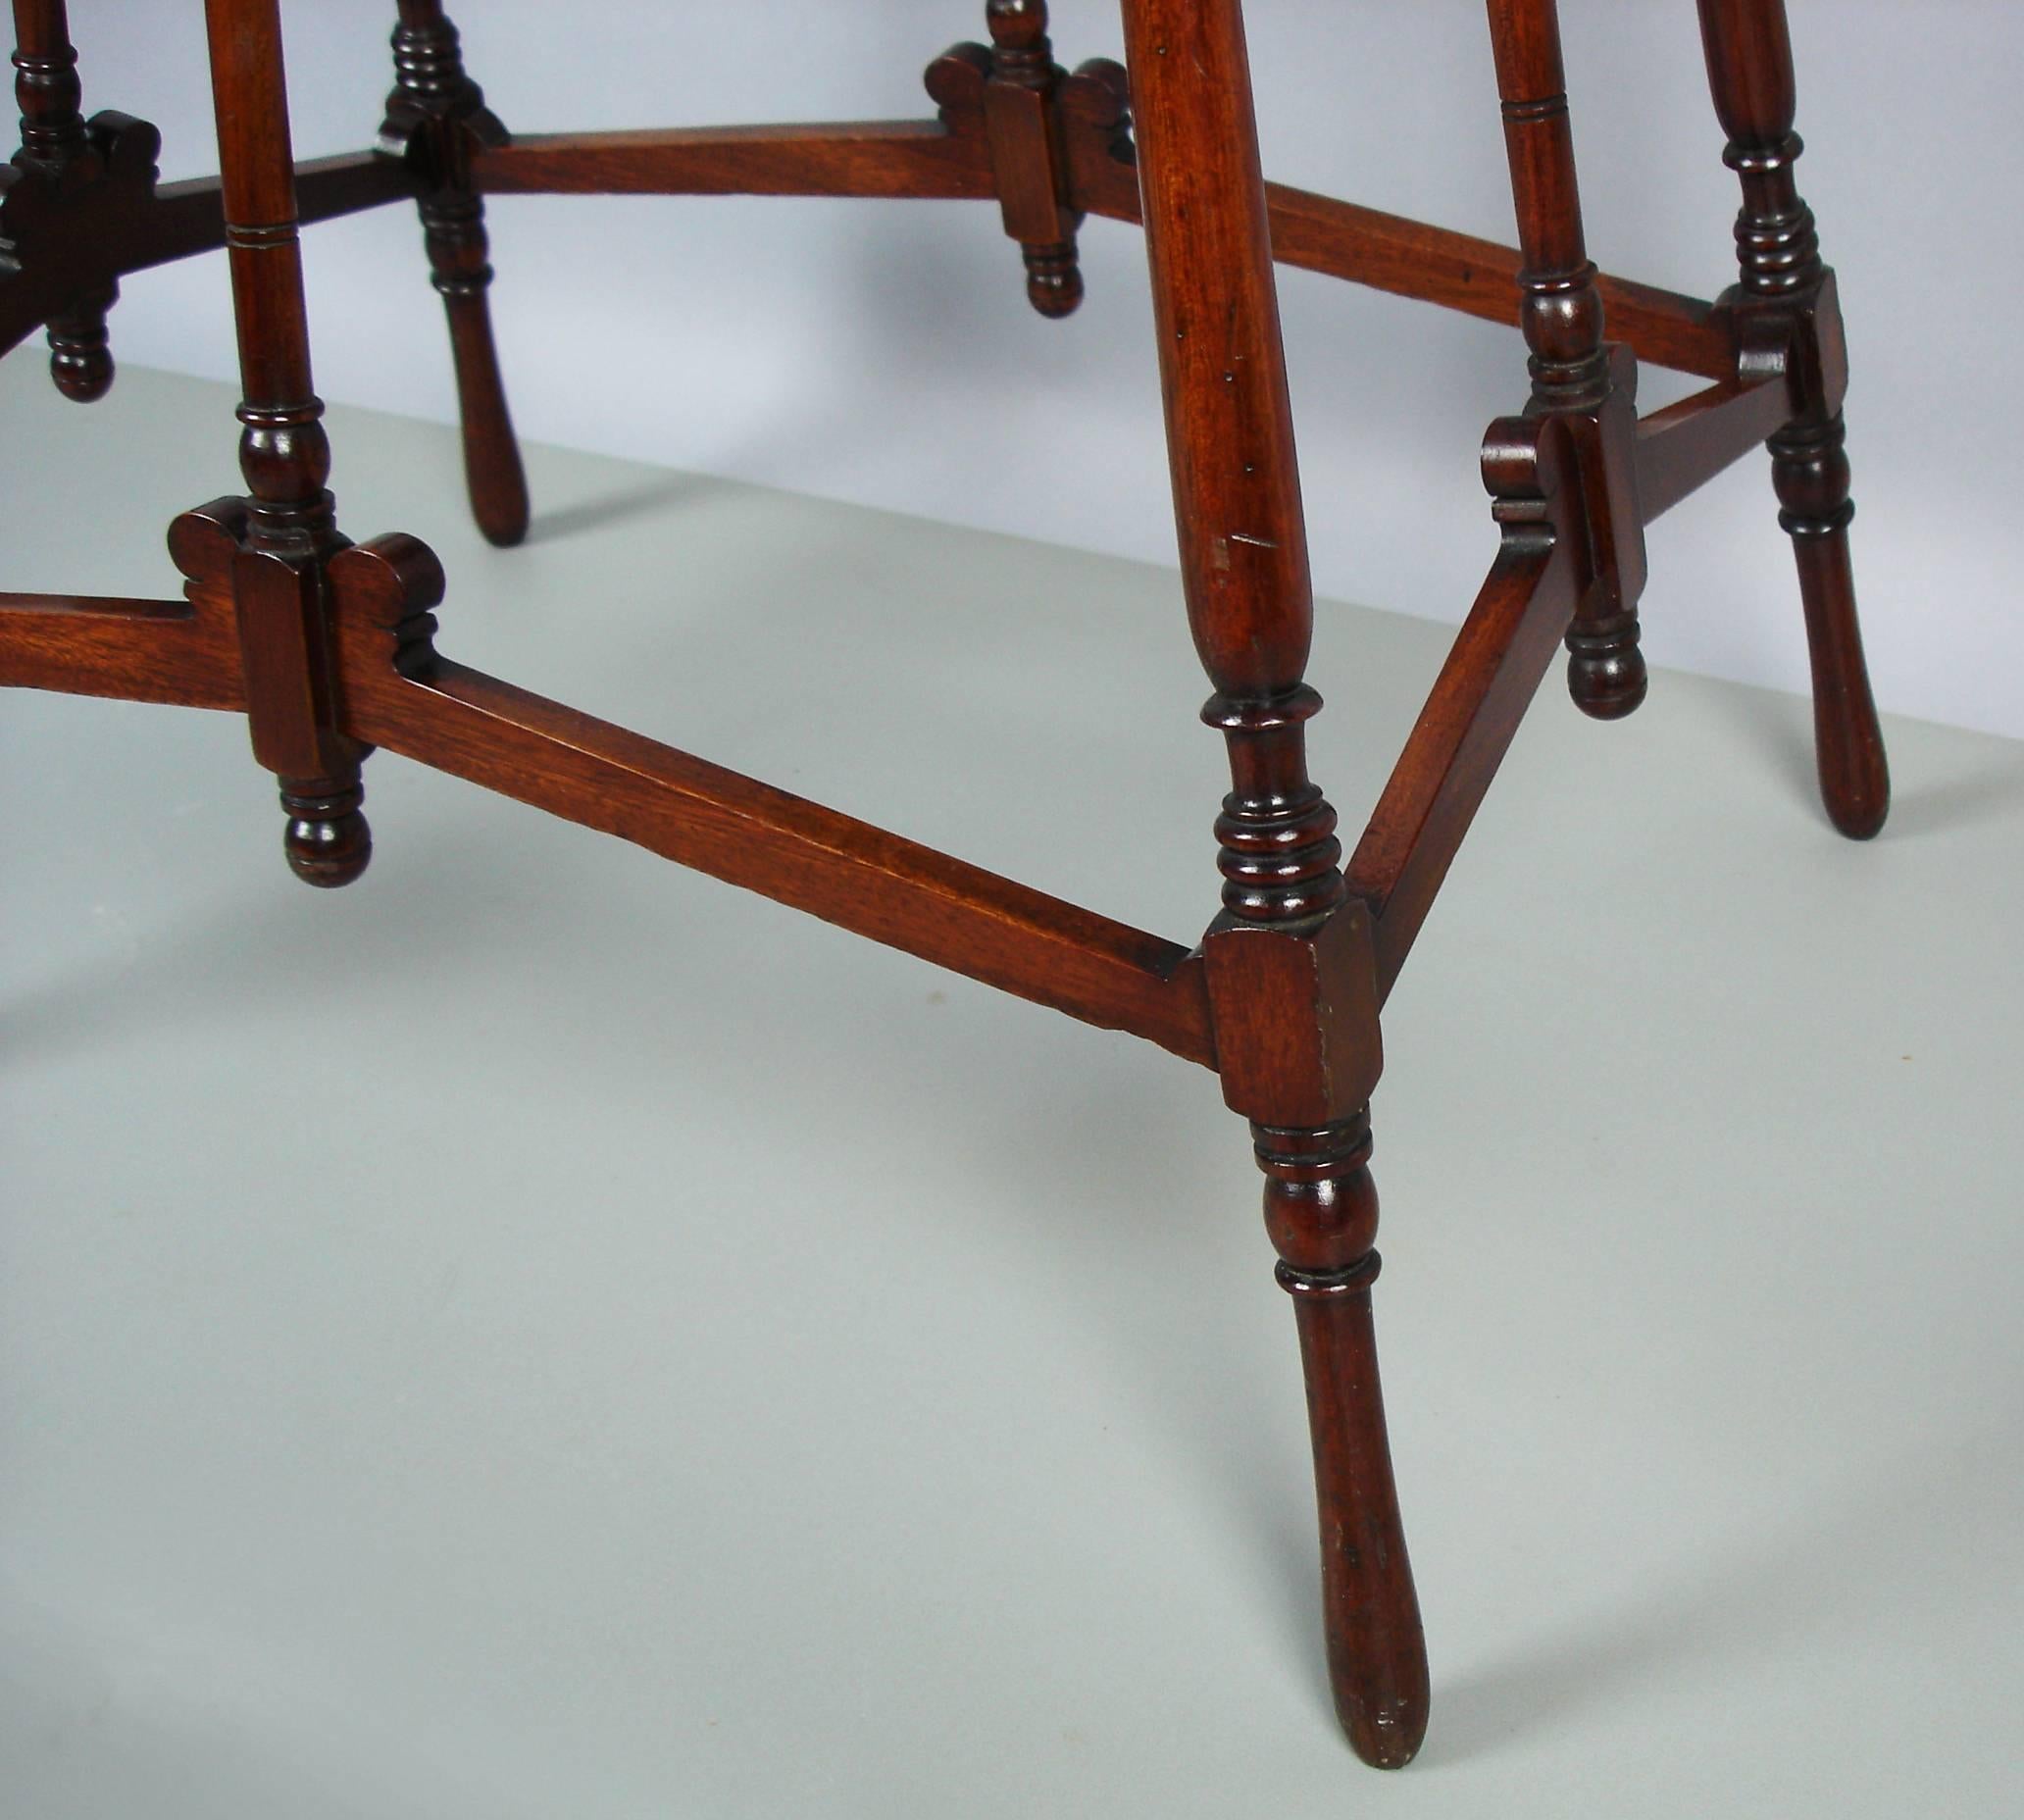 19th Century Aesthetic Movement Mahogany Tea Table and its Tray